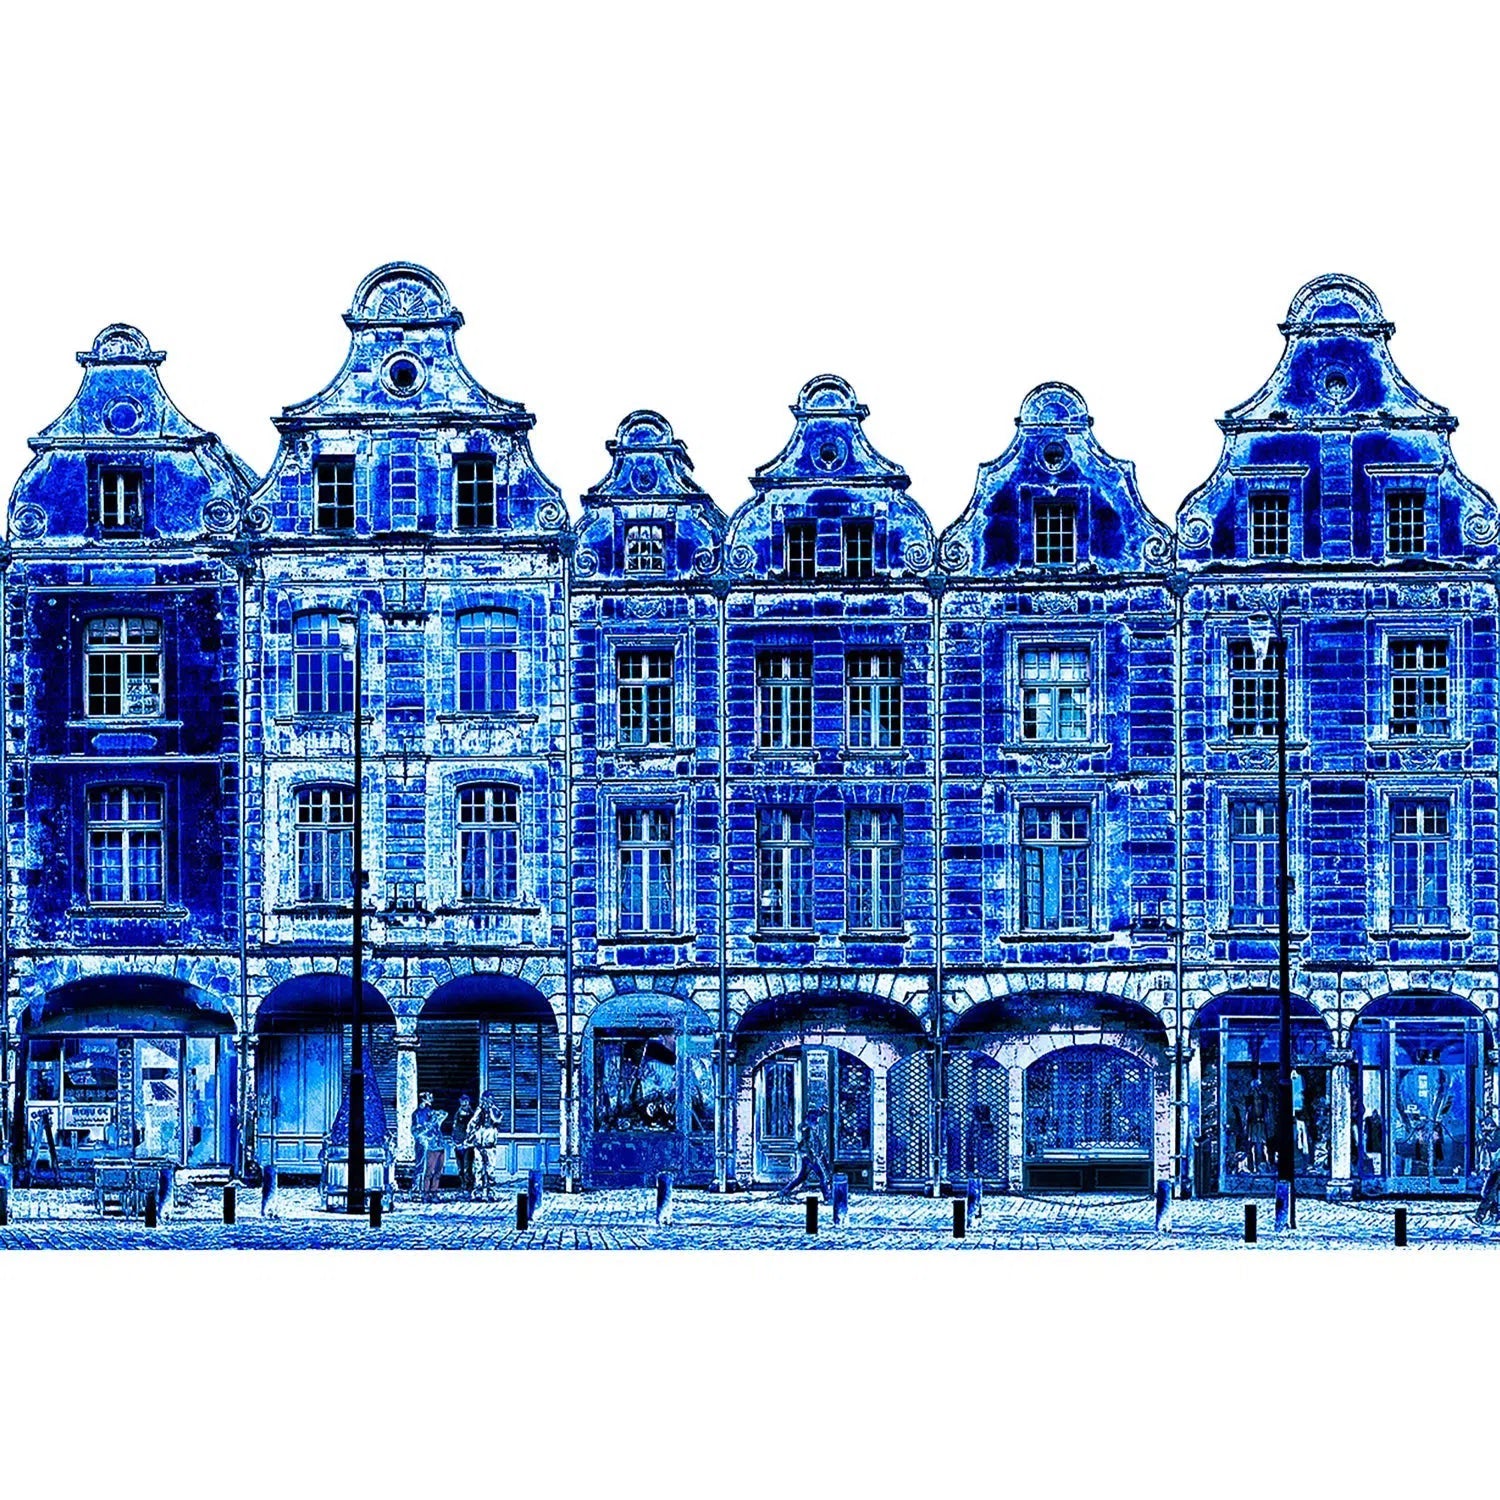 Façades des places d'Arras, version bleu d'Arras-Imagesdartistes